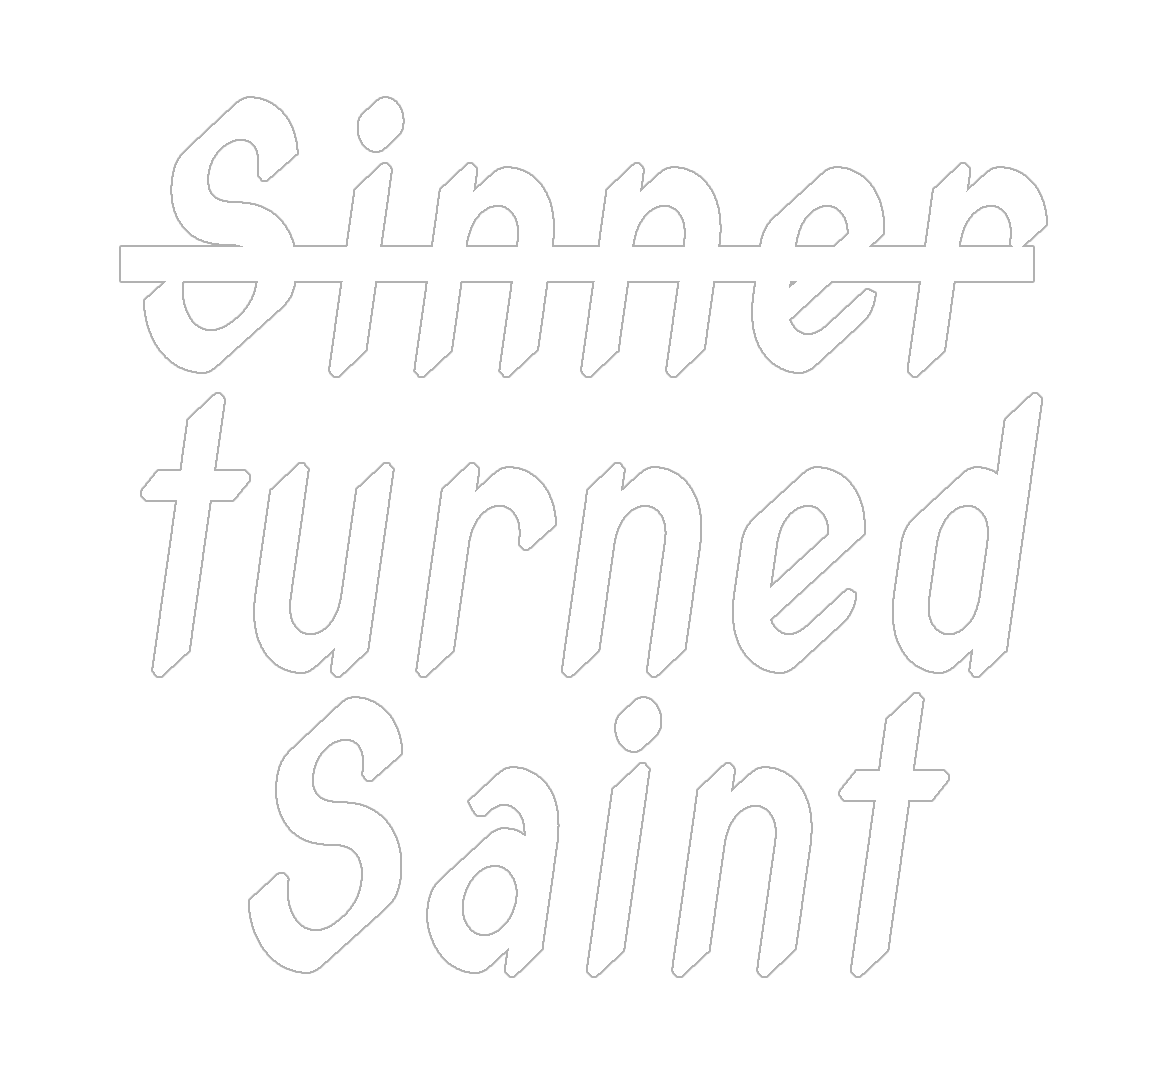 Sinner turned Saint3